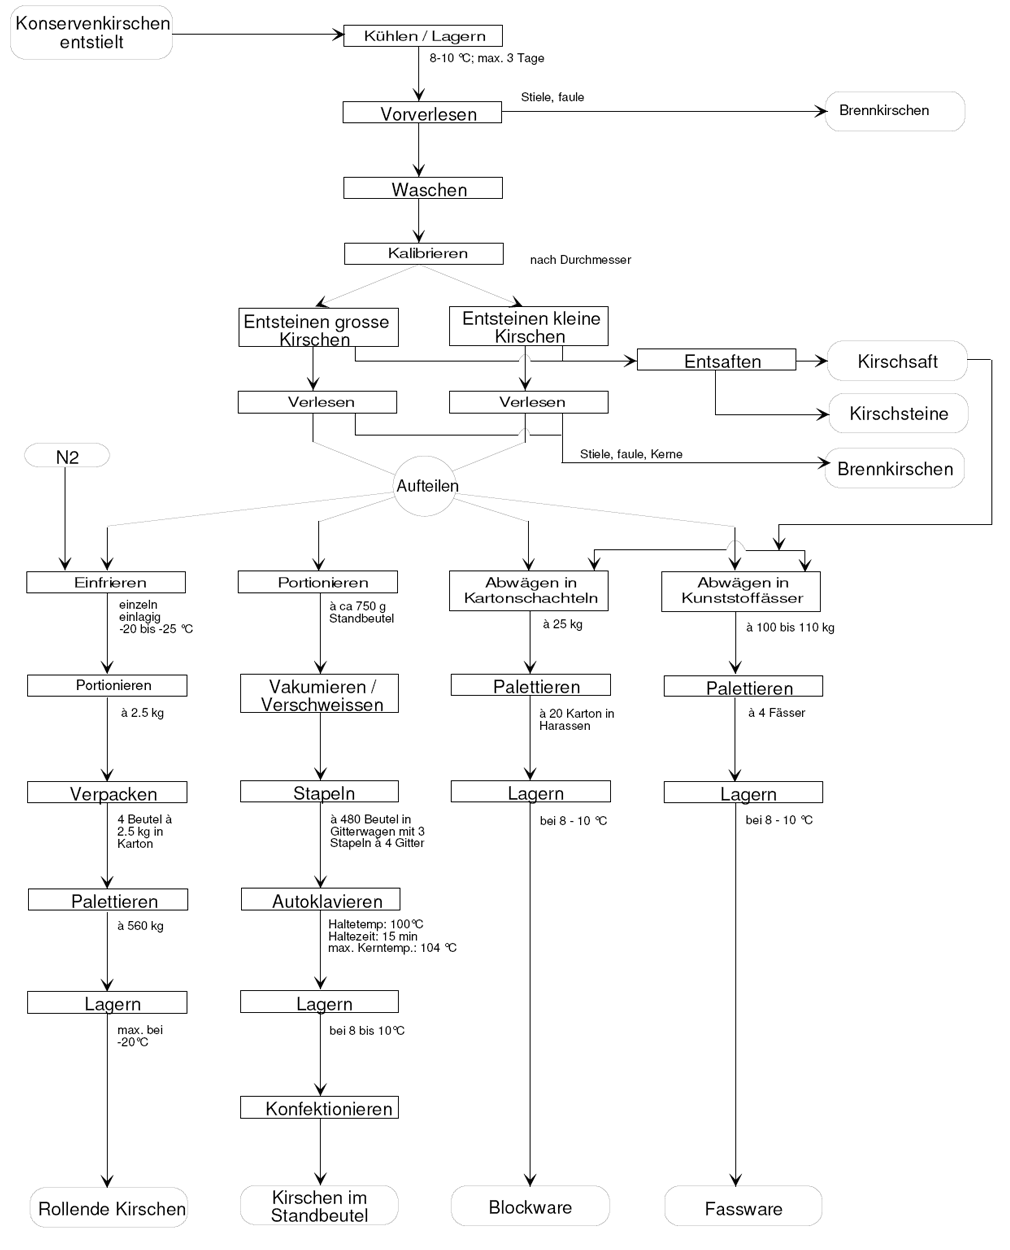 Ablaufdiagramm zur Kirschenverarbeitung